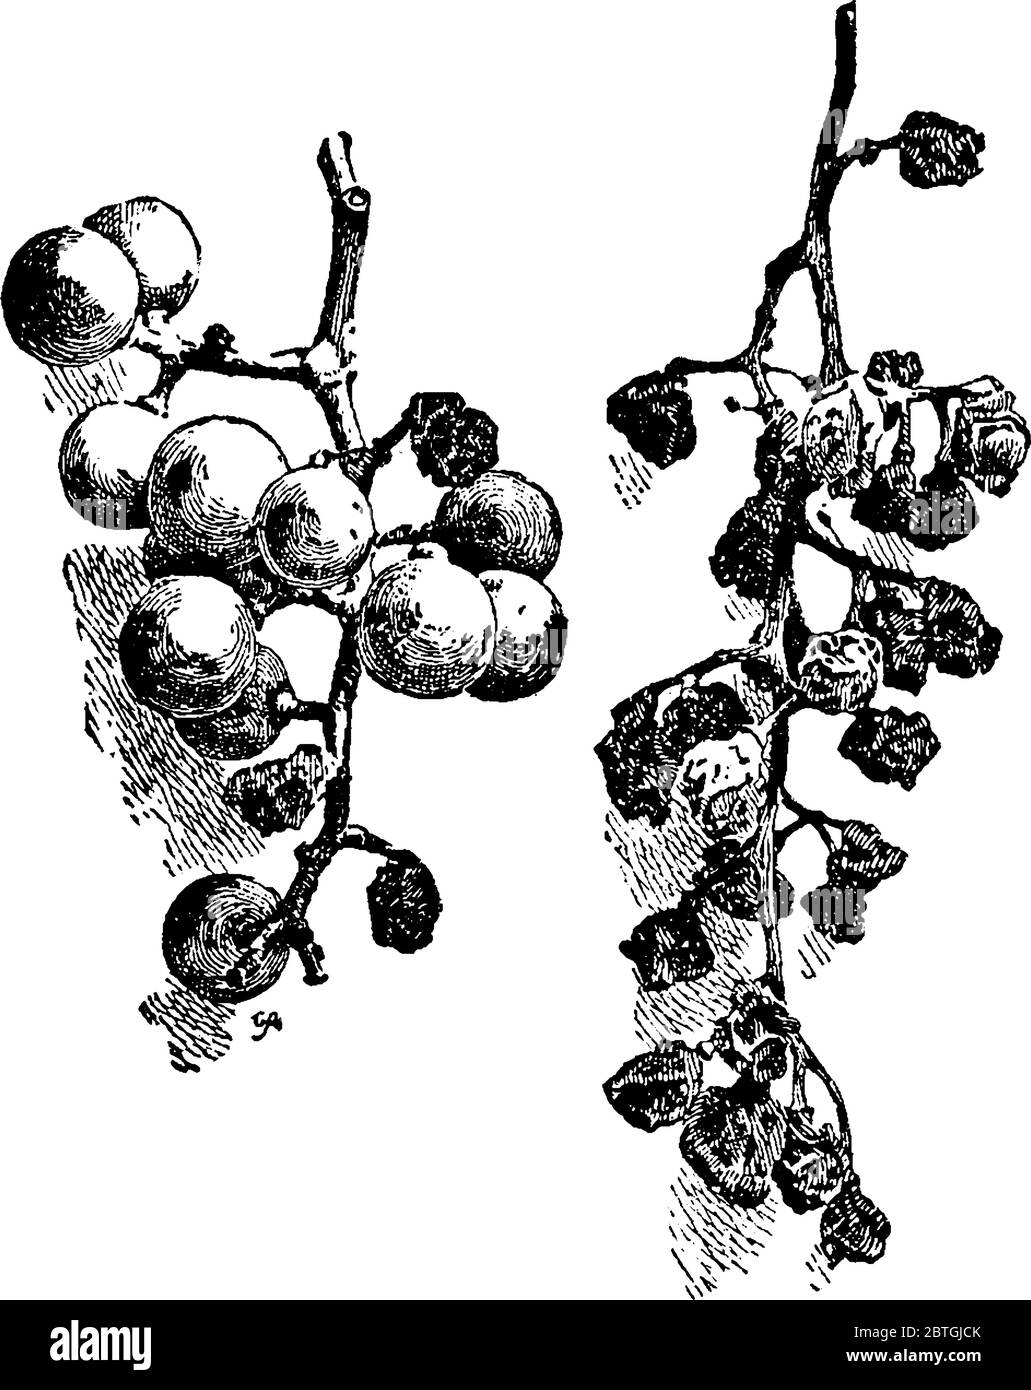 Immagine che mostra le uve sono rovinate da un'infezione fungina chiamata marciume nero, disegno di linea d'annata o illustrazione dell'incisione. Illustrazione Vettoriale